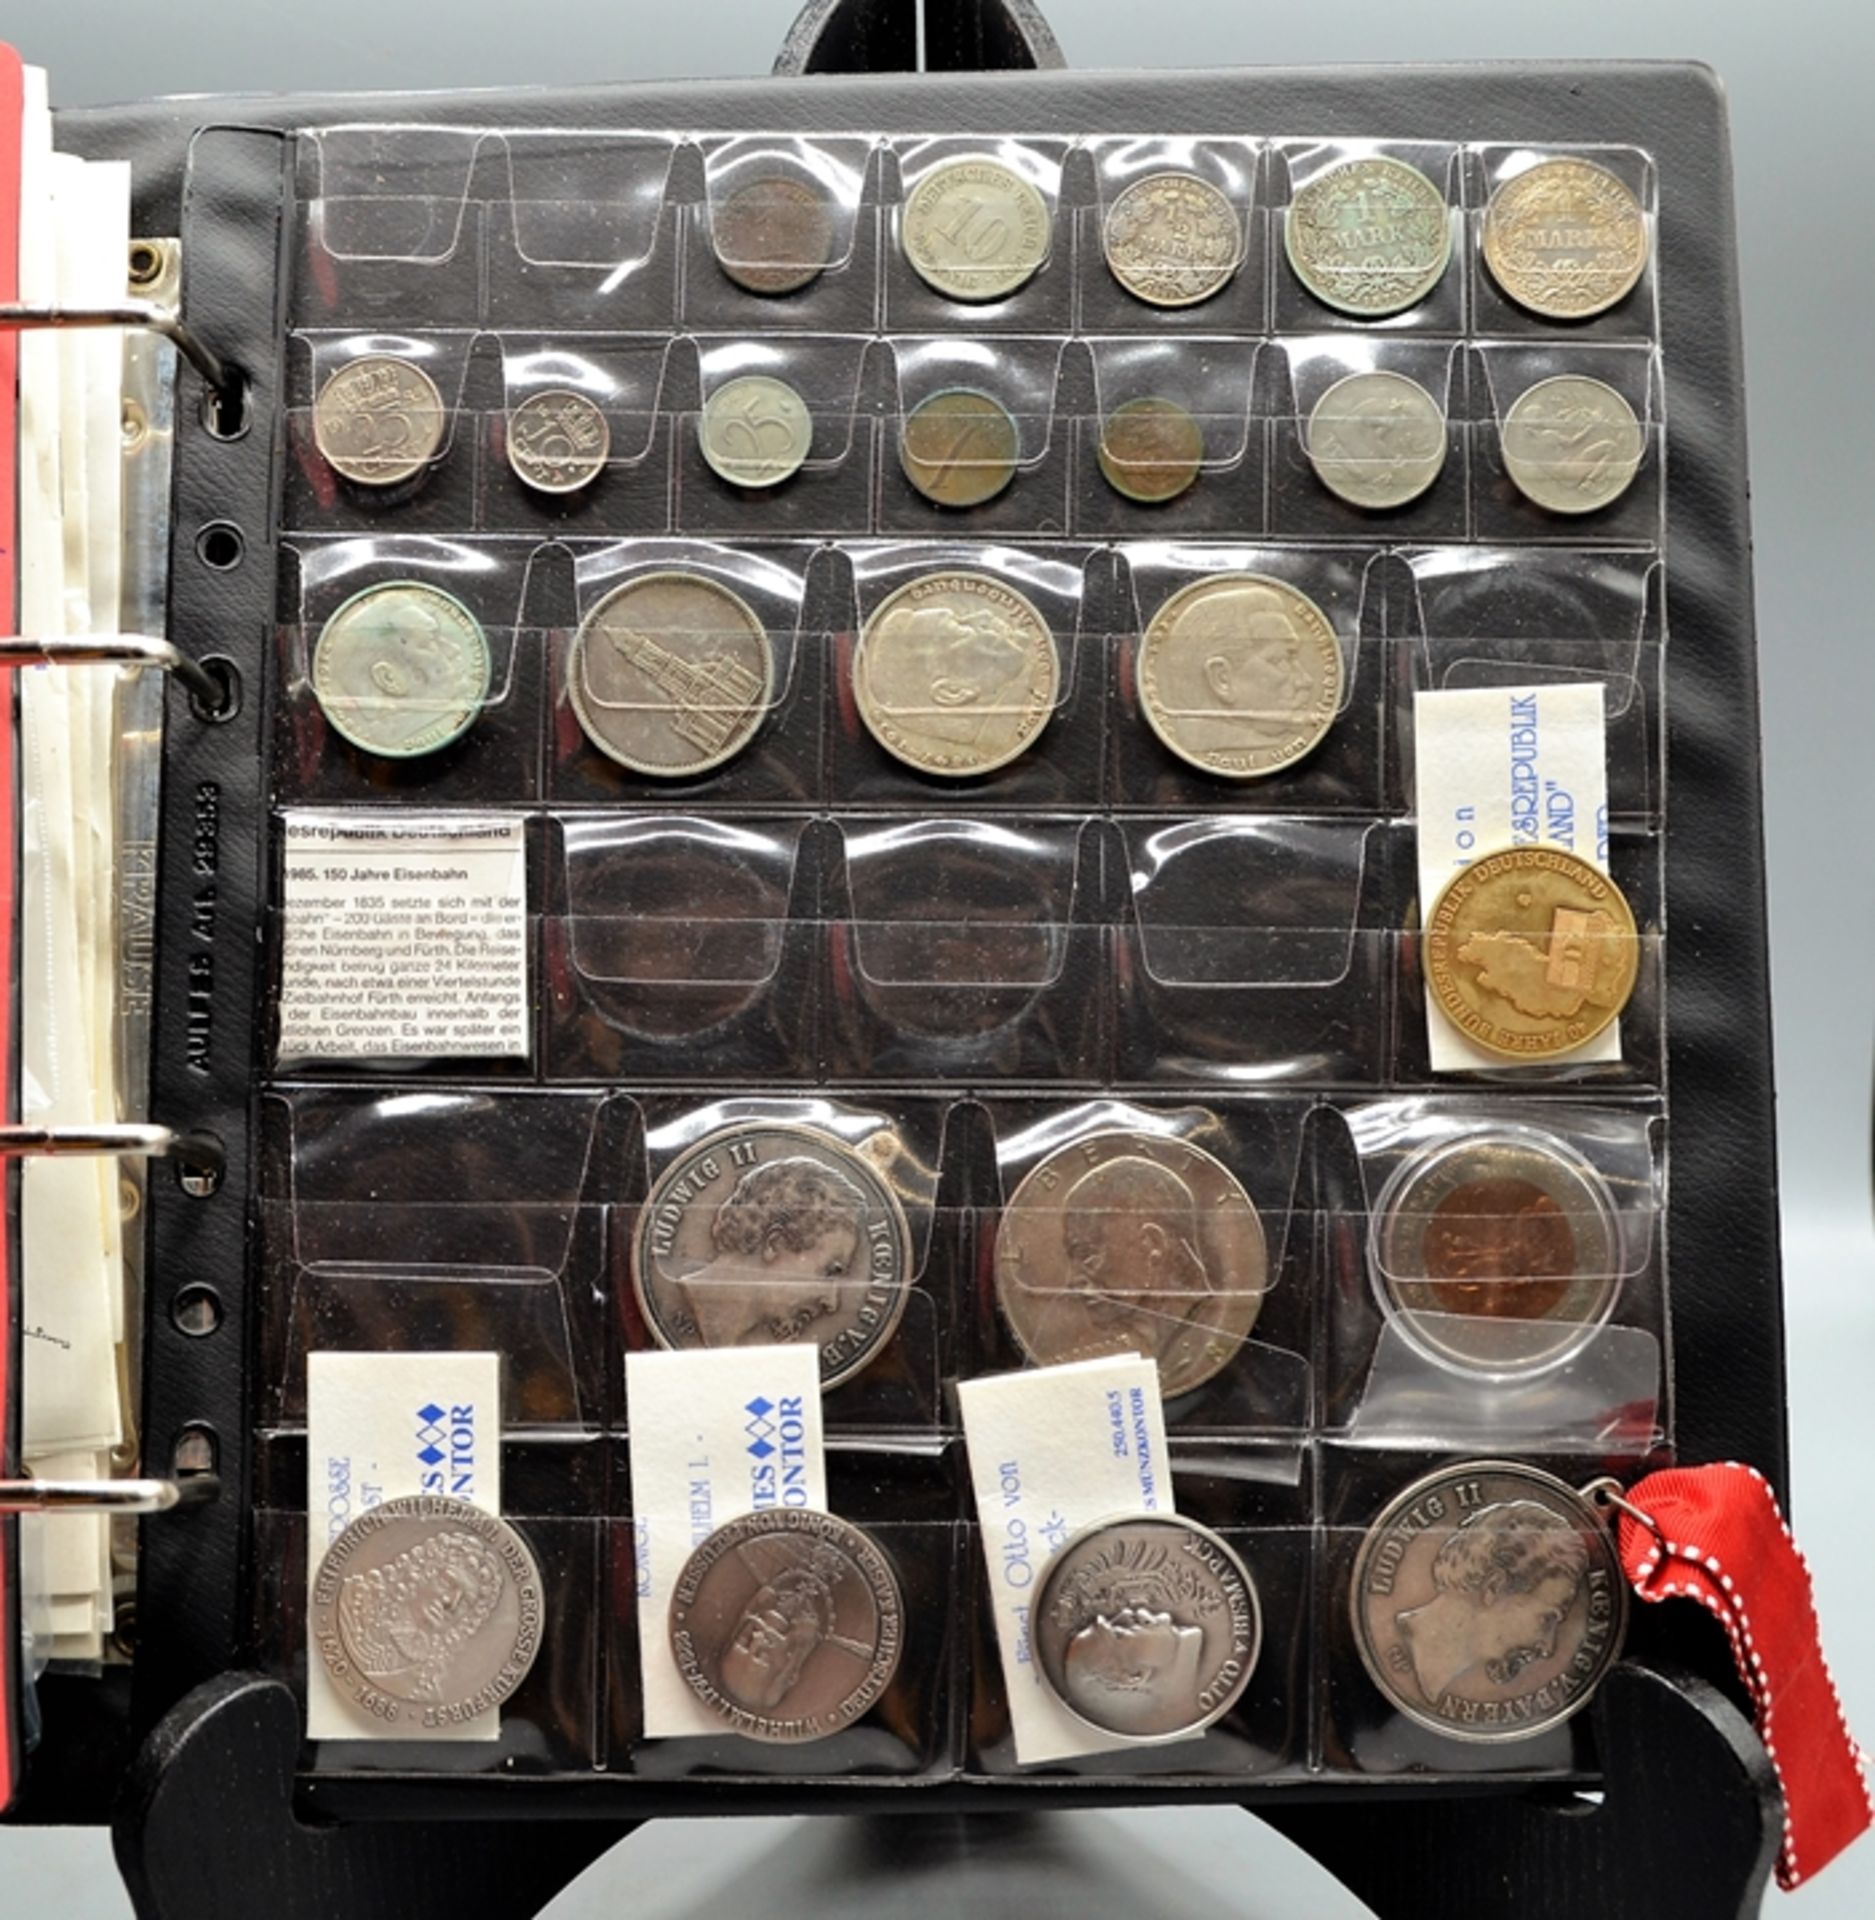 Münzen u. Medaillen Sammlung, darunter 2 x 20 Dollars Canada 1985 Calgary 1988 Silber, Kennedy Half - Bild 2 aus 3